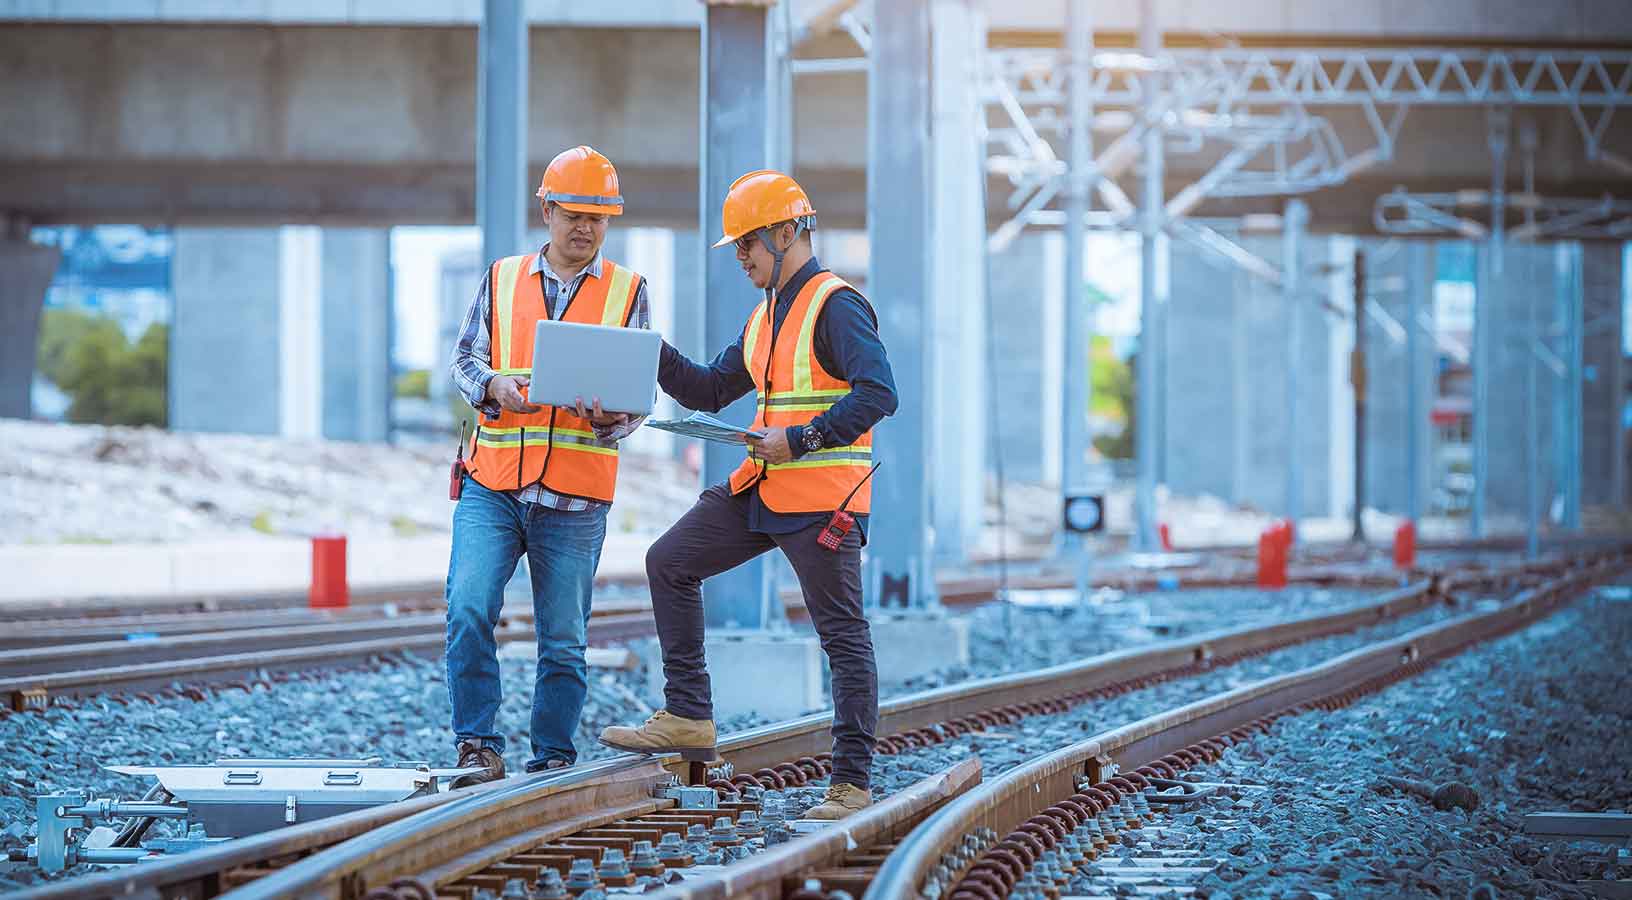 Ingeniero inspeccionando y comprobando el proceso de construcción del desvío de ferrocarril y las obras en la estación ferroviaria. Ingeniero con casco y uniforme de seguridad en el trabajo.